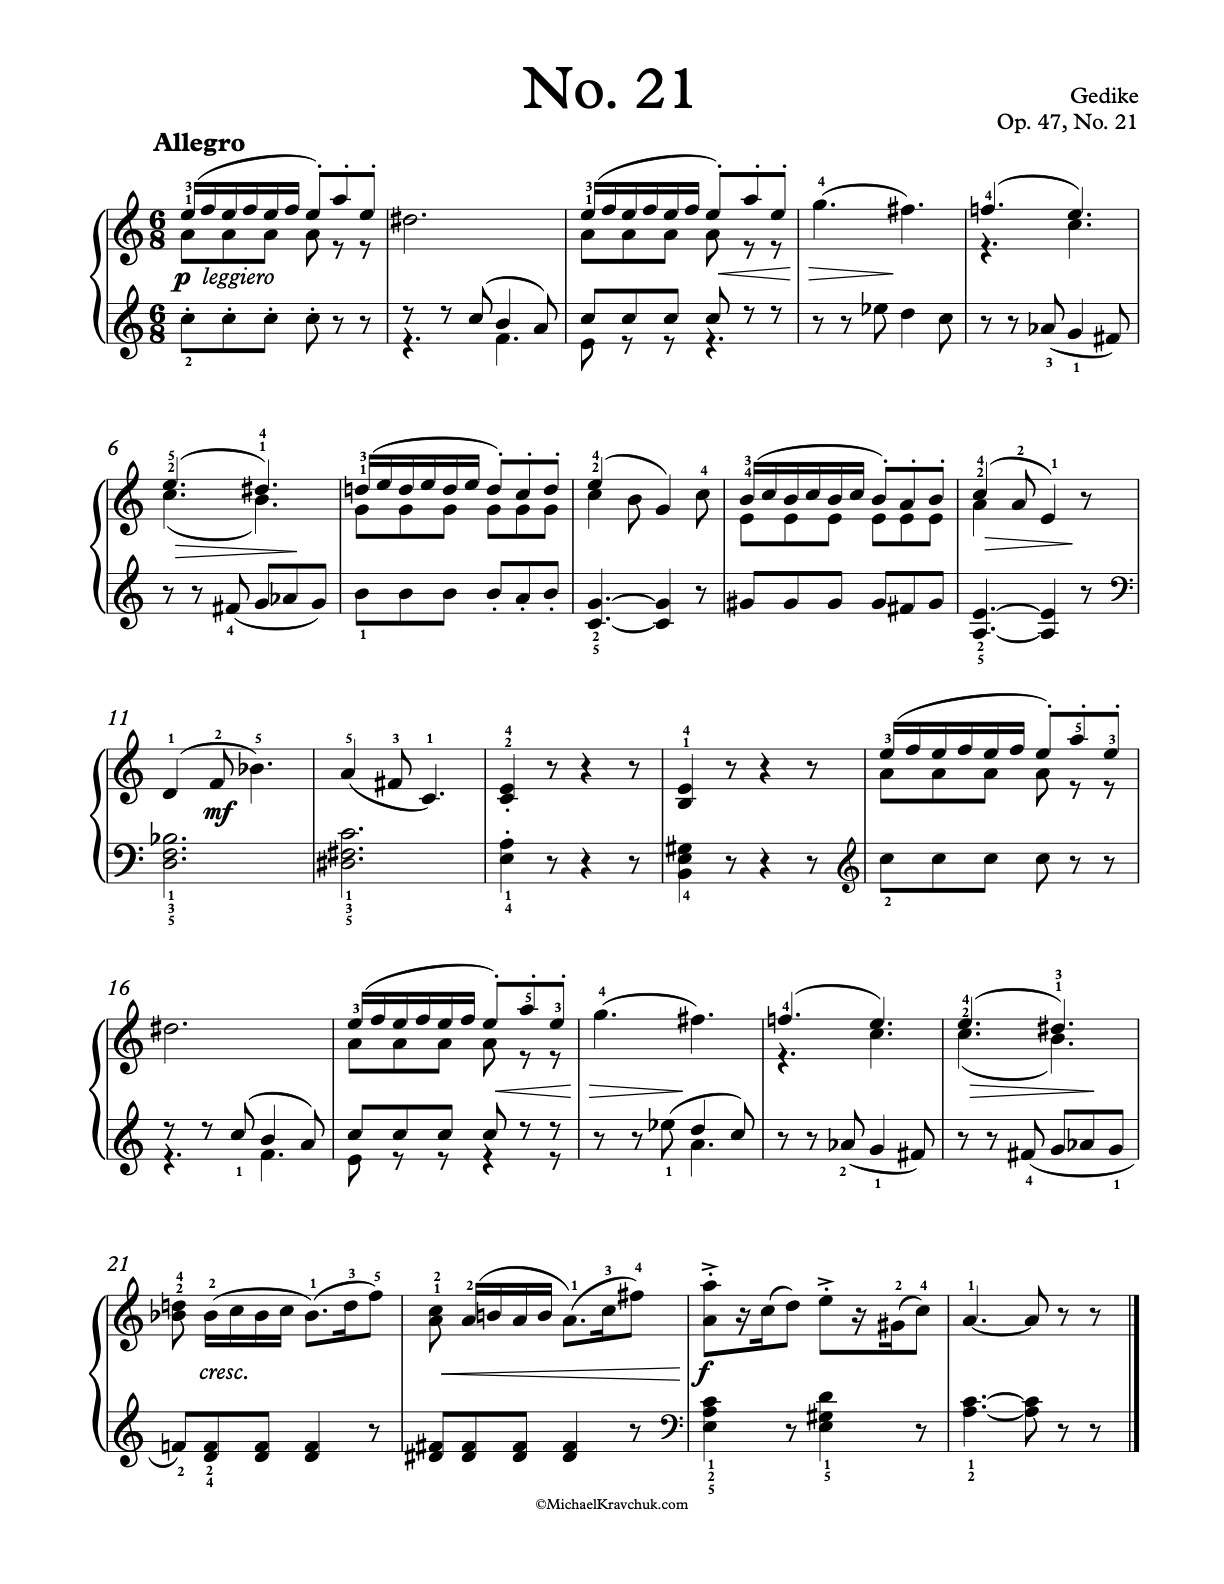 Op. 47, No. 21 Piano Sheet Music